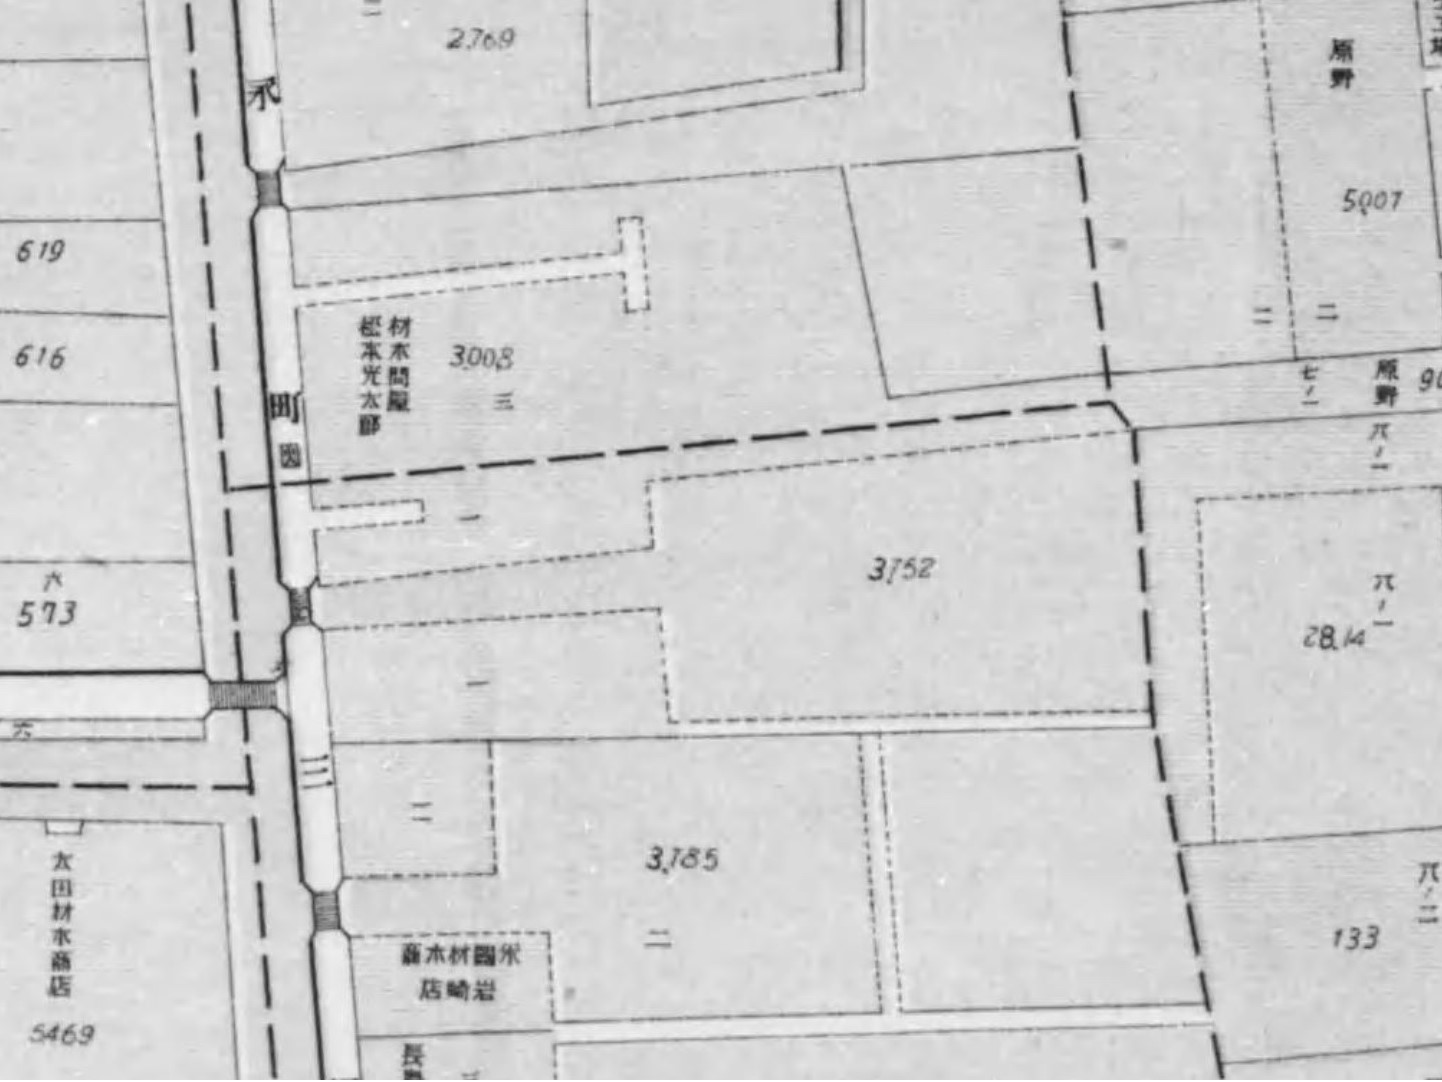 深川三好町（『東京市及接続郡部地籍地図』東京市区調査会、1912）の画像。 